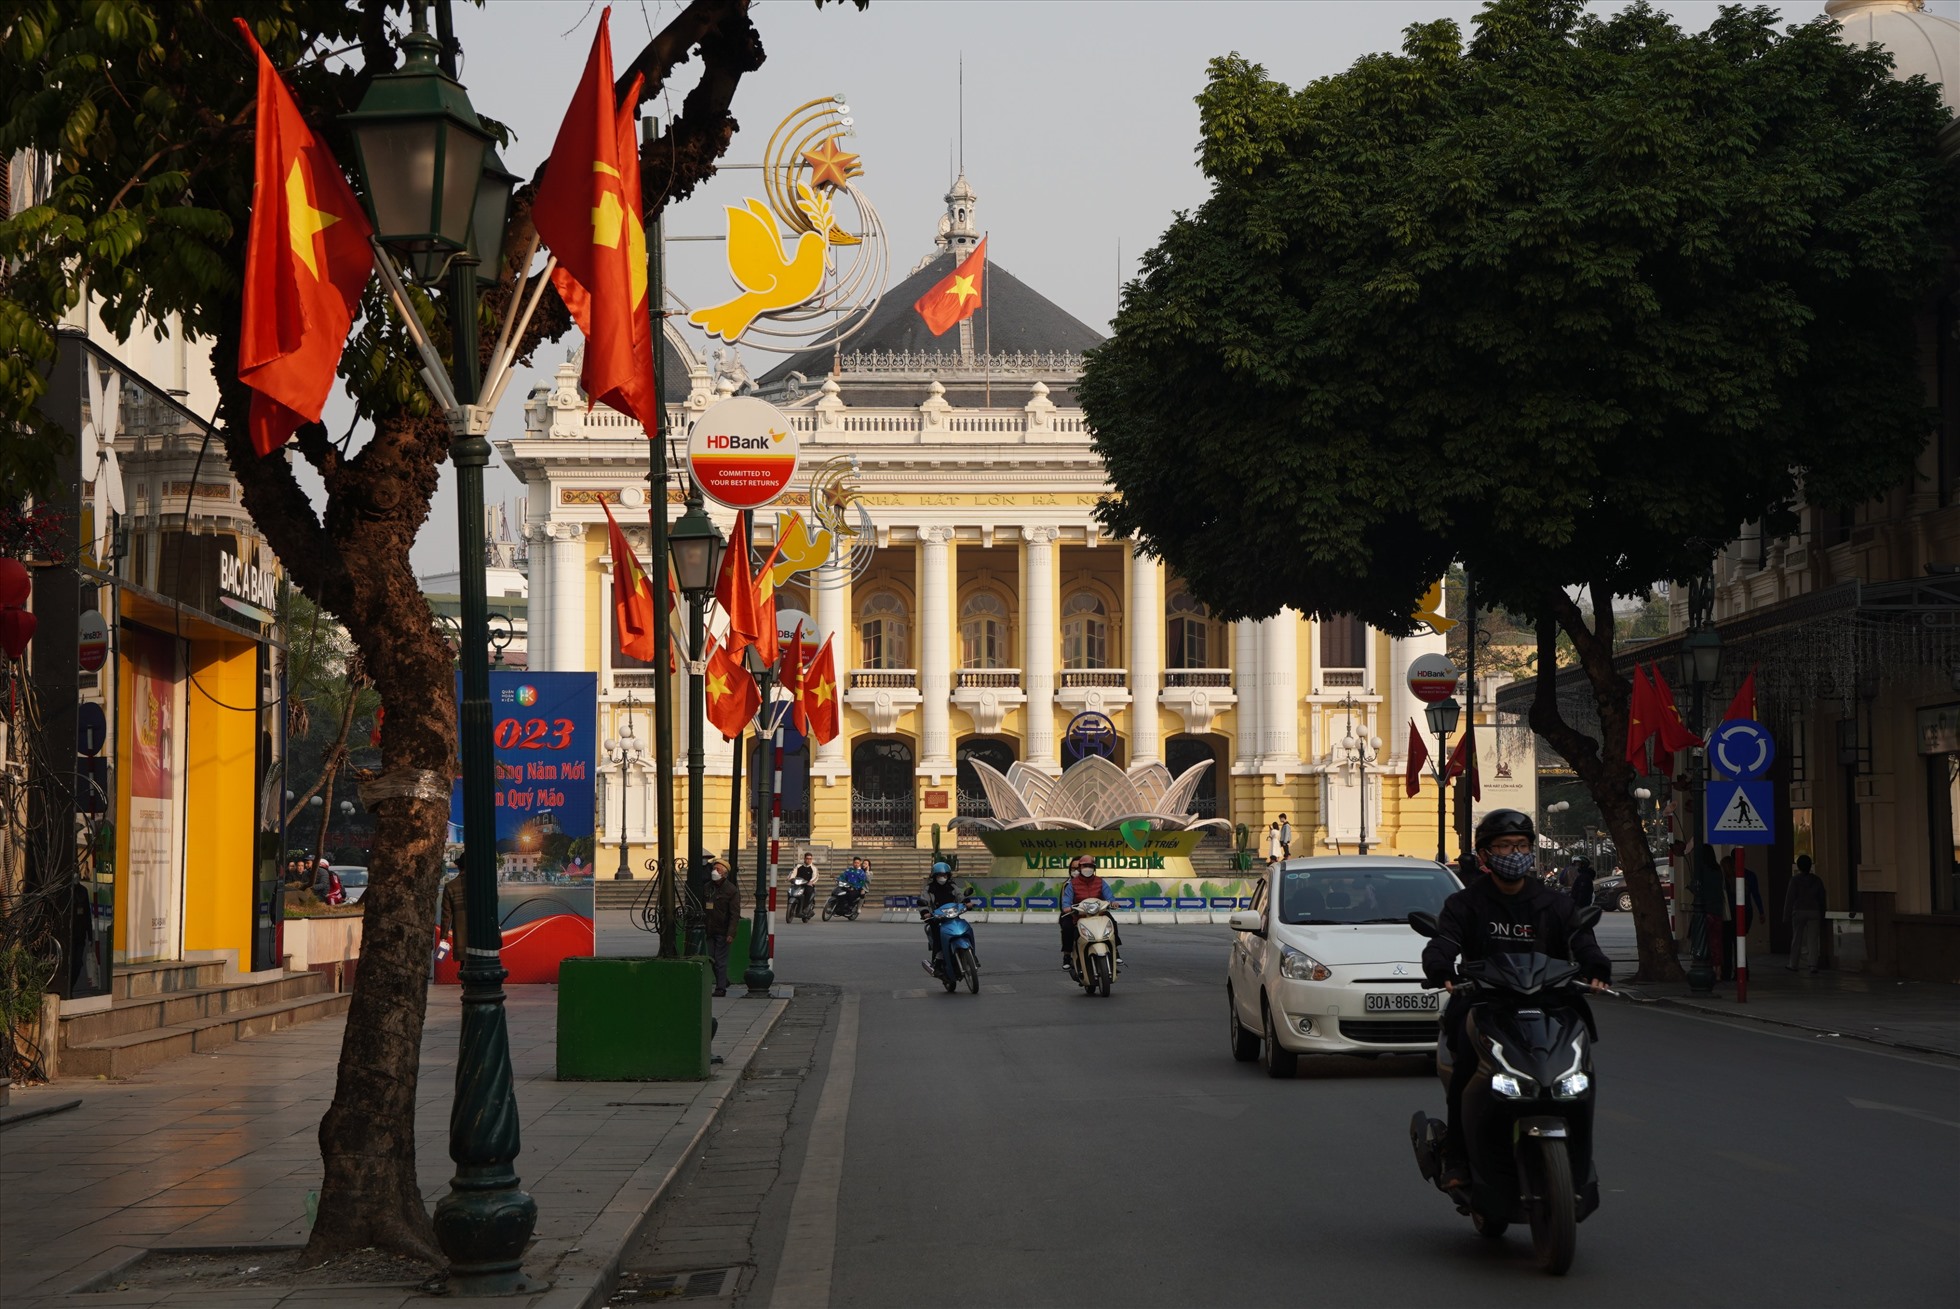 Băng rôn, cờ hoa chào mừng ngày thành lập Đảng được treo khắp các con phố trung tâm Hà Nội.